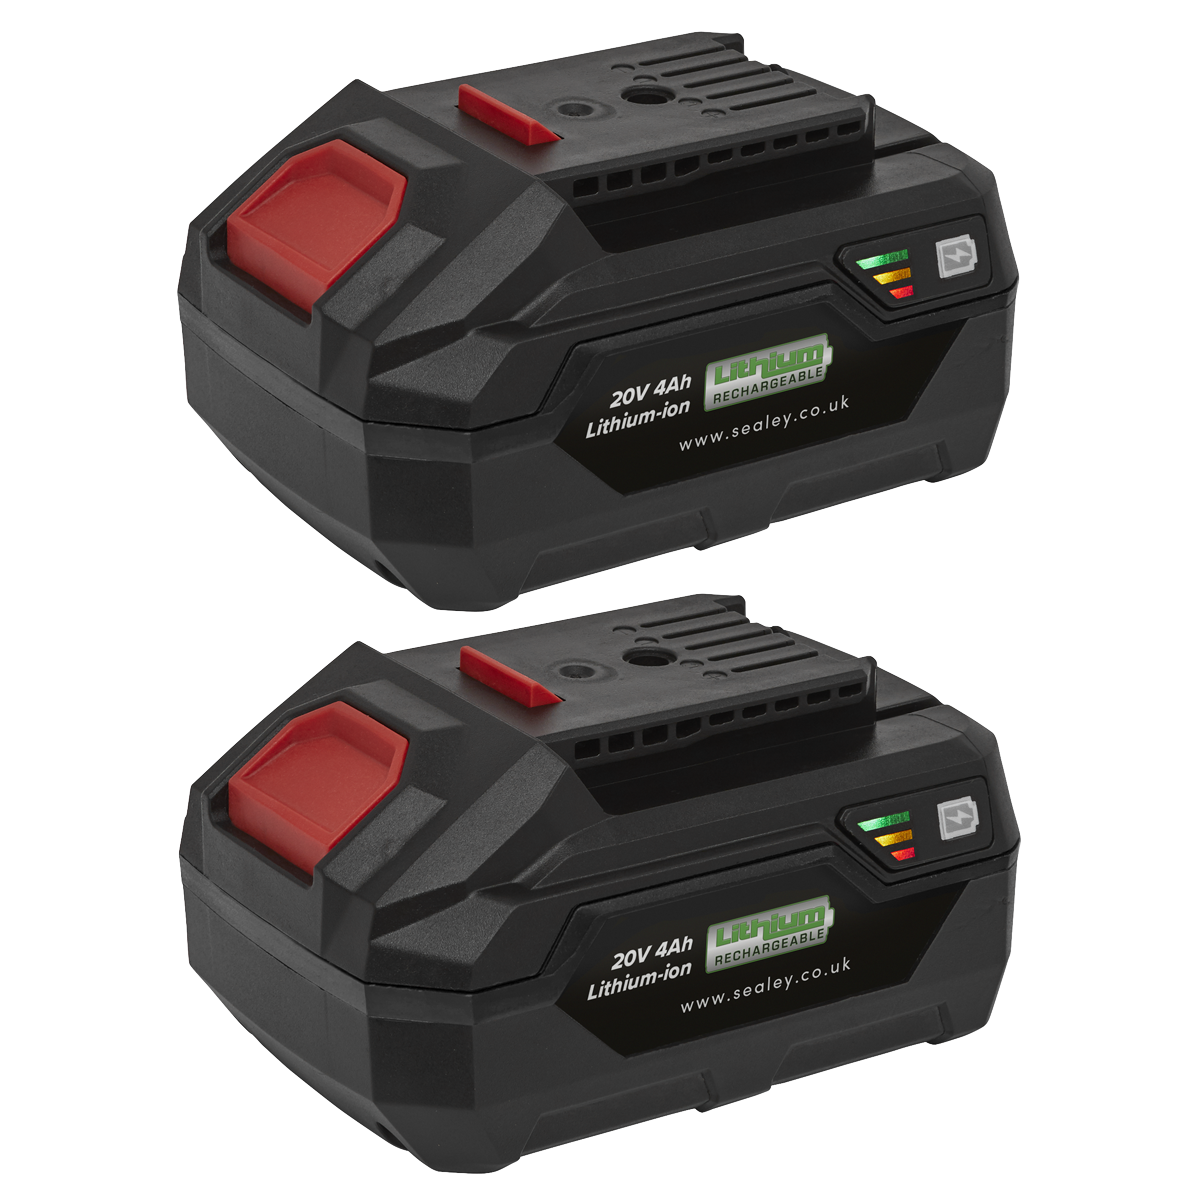 Power Tool Battery Pack 20V 4Ah Kit for SV20 Series - BK04 - Farming Parts